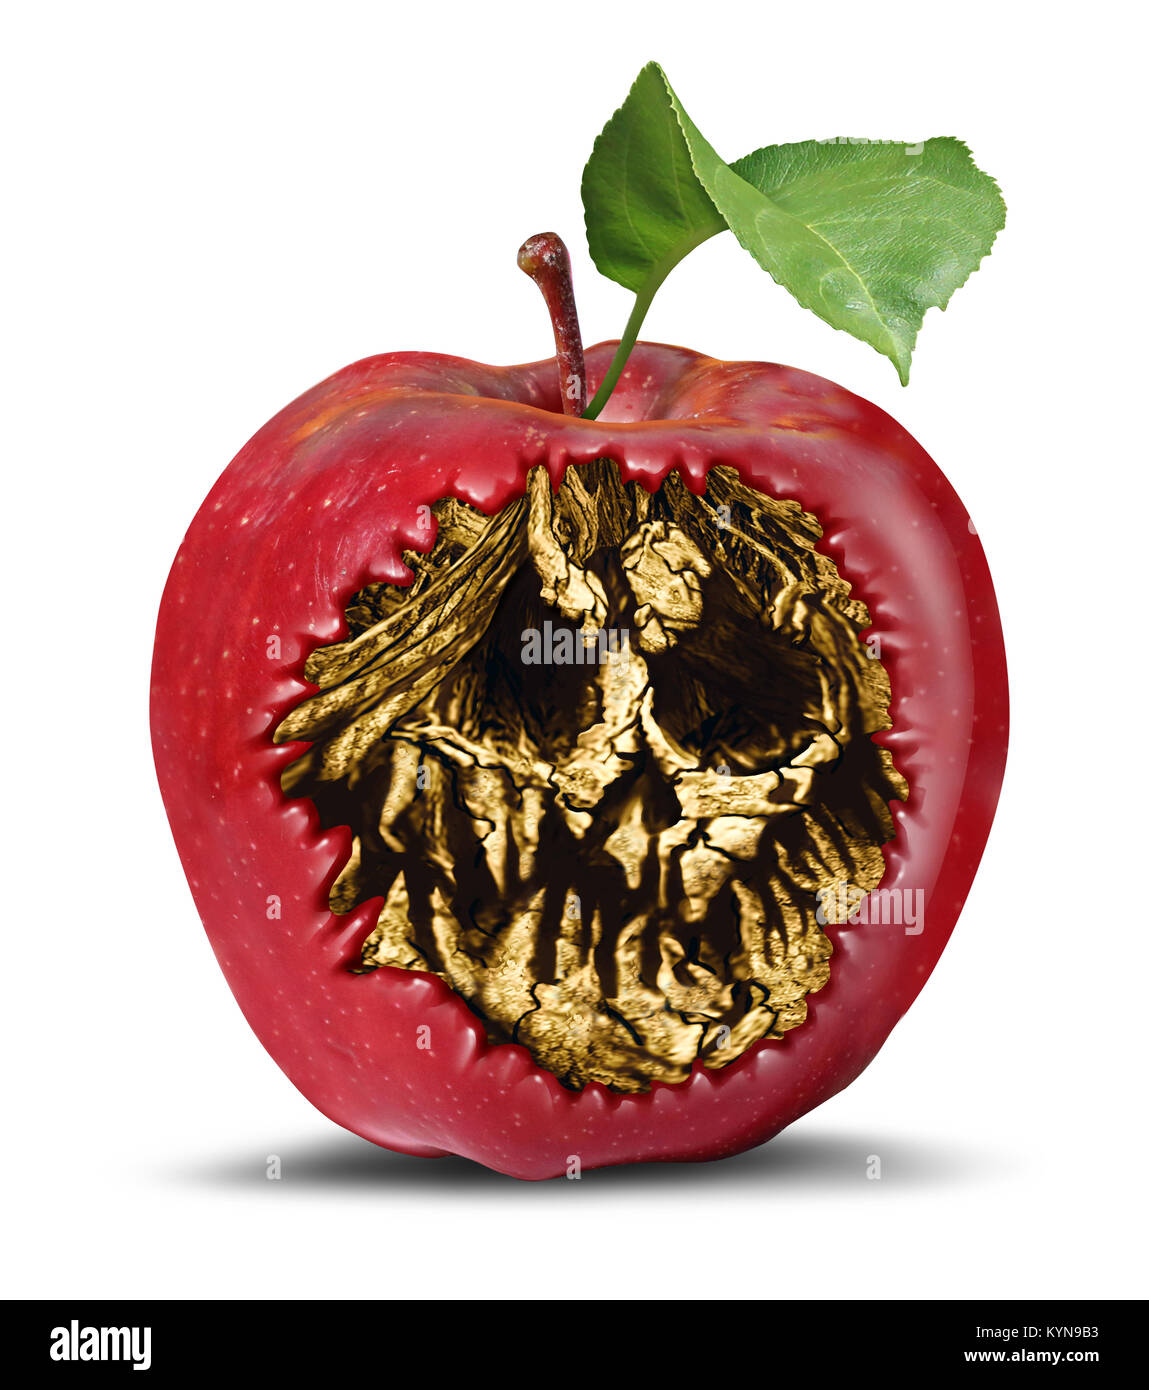 Pomme empoisonnée et de la sécurité alimentaire comme un fruit pourri avec un crâne à l'intérieur caché de la mort comme un symbole de la sorcellerie ou magique malédiction. Banque D'Images